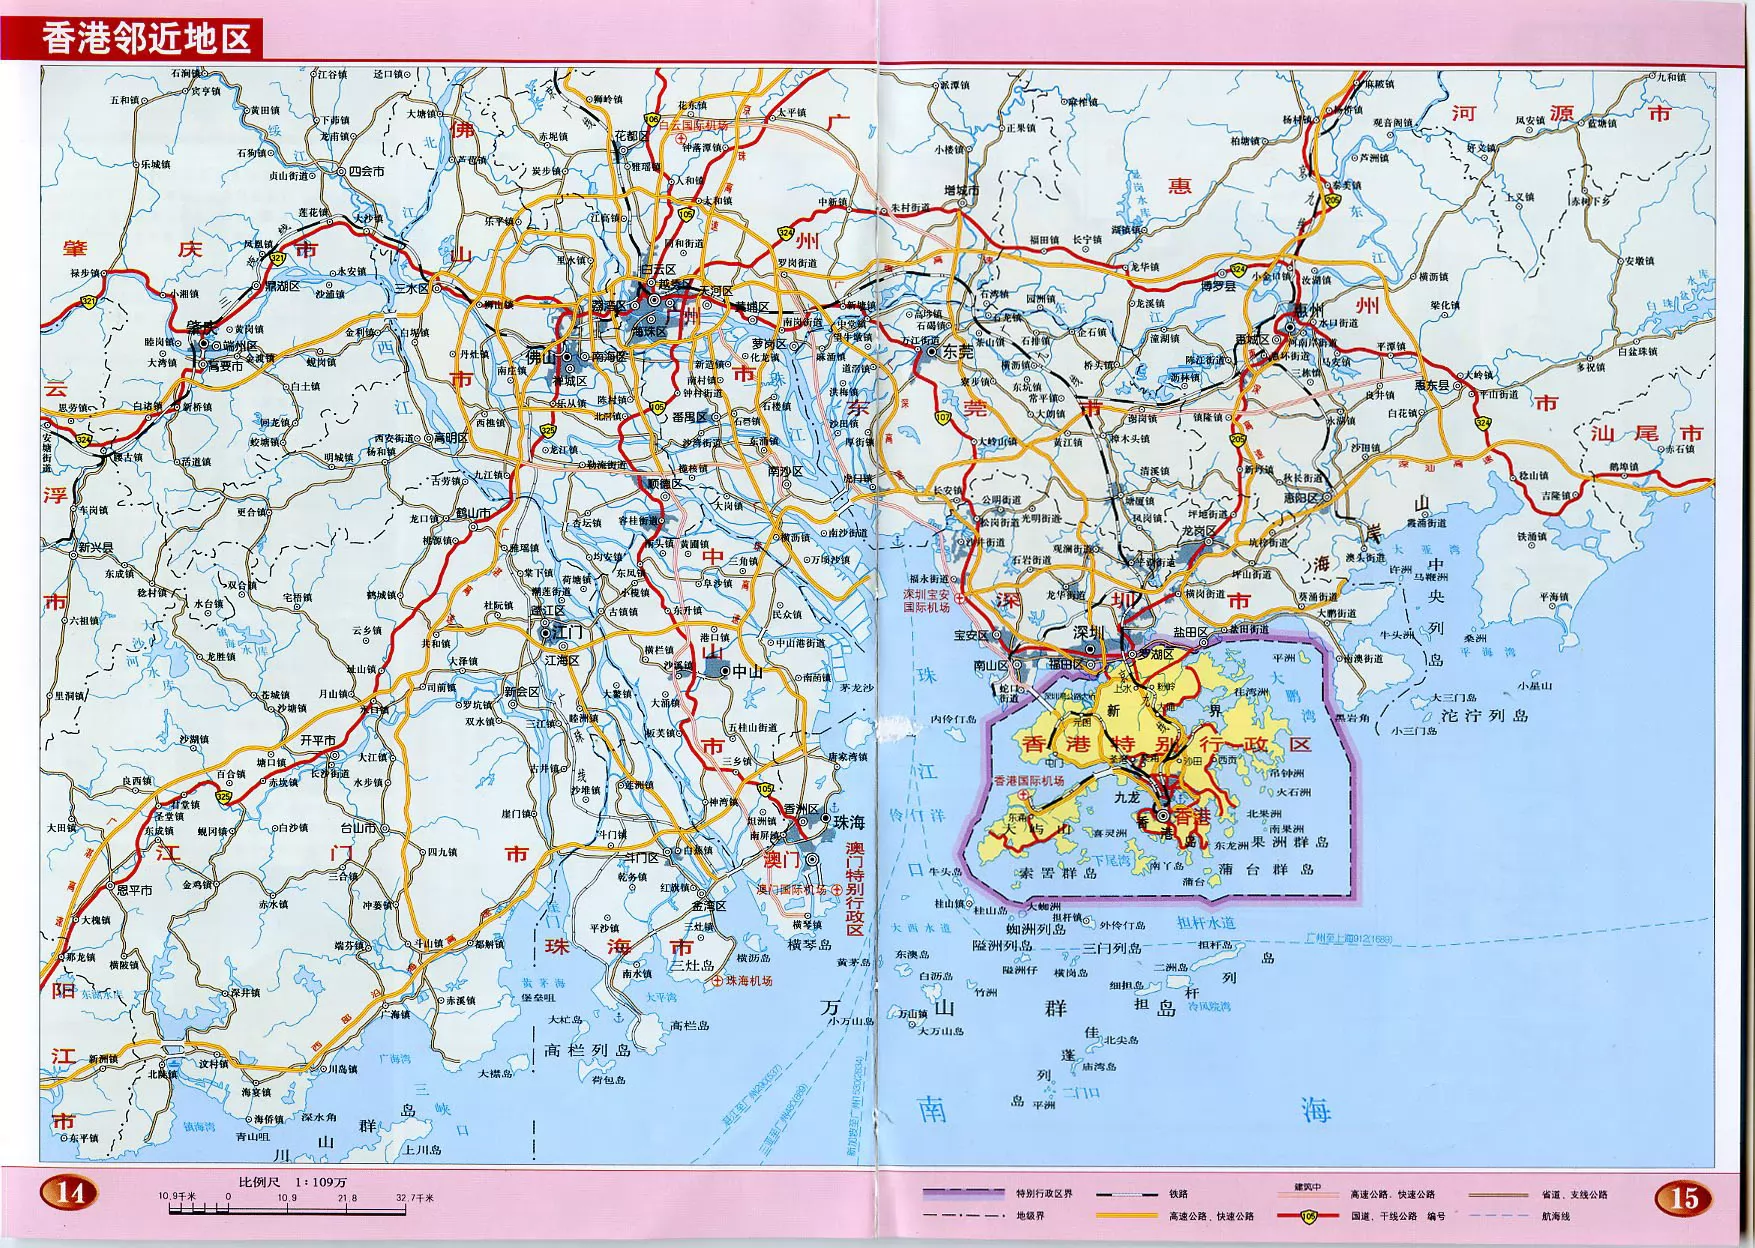 香港地图高清大图含地形地势|香港地图高清大图含地形地势全图高清版大图片|旅途风景图片网|www.visacits.com